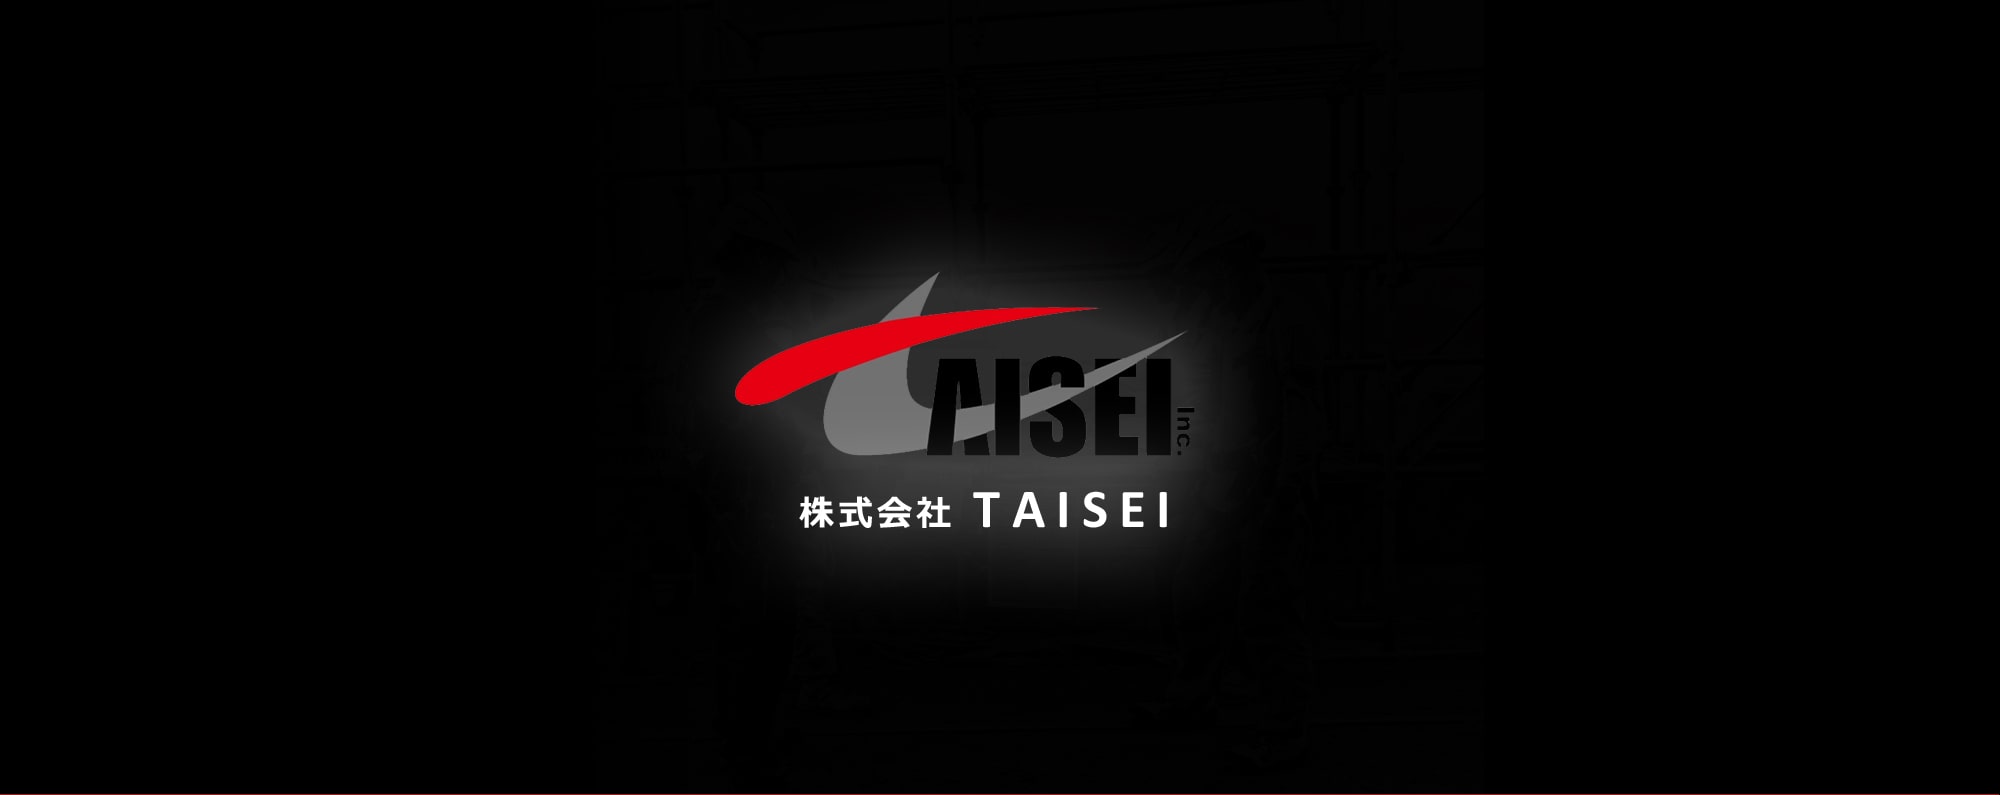 株式会社TAISEI